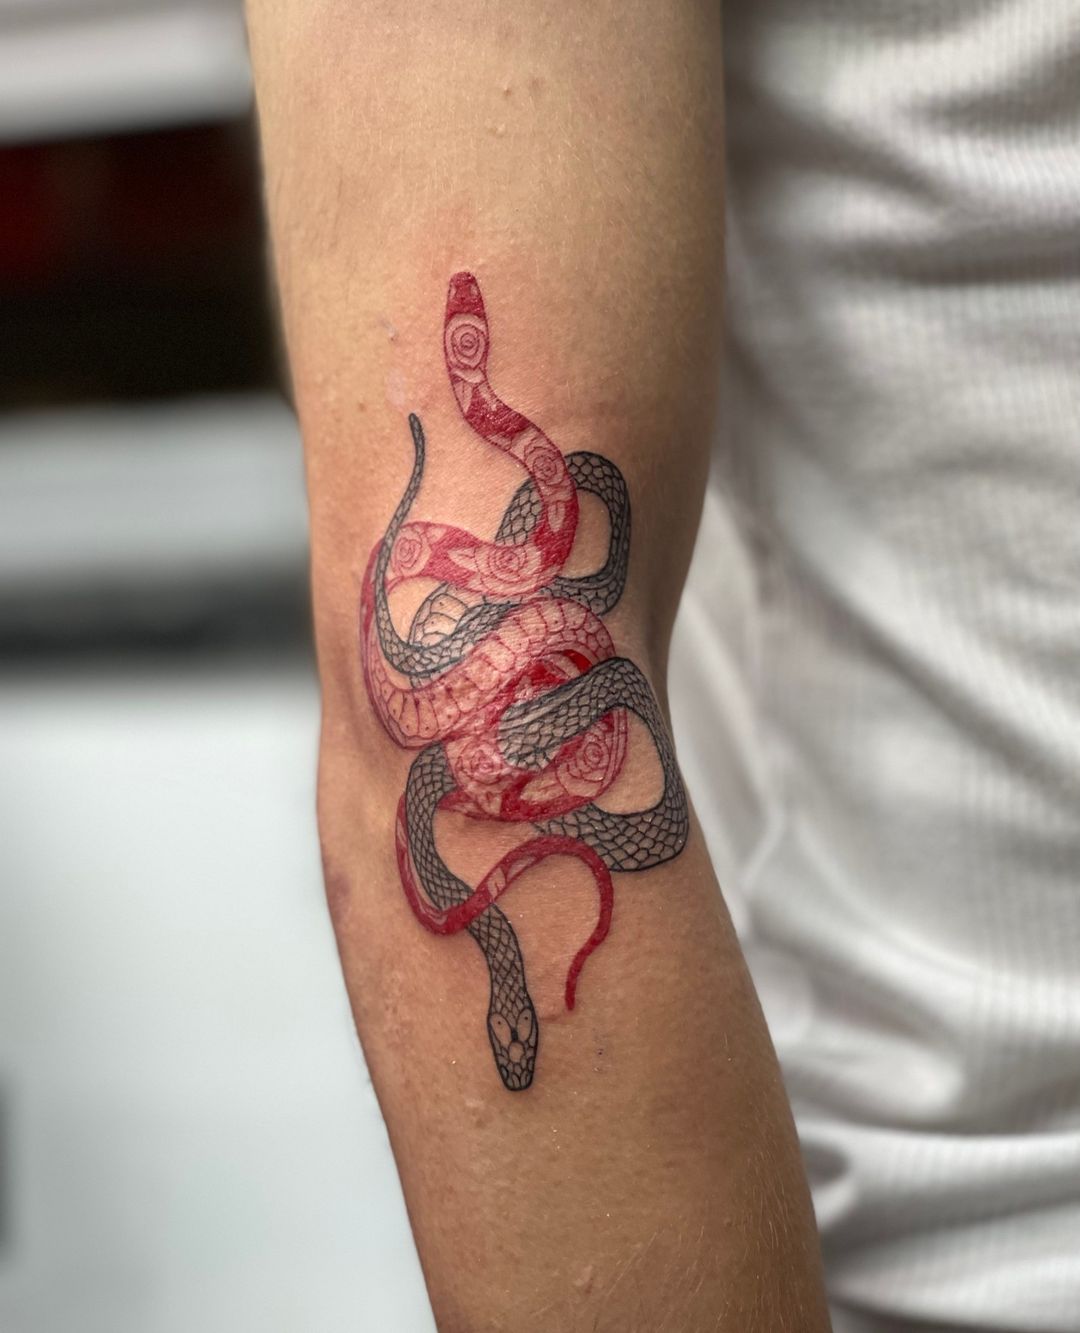 Tatuaje de serpiente y una espada.